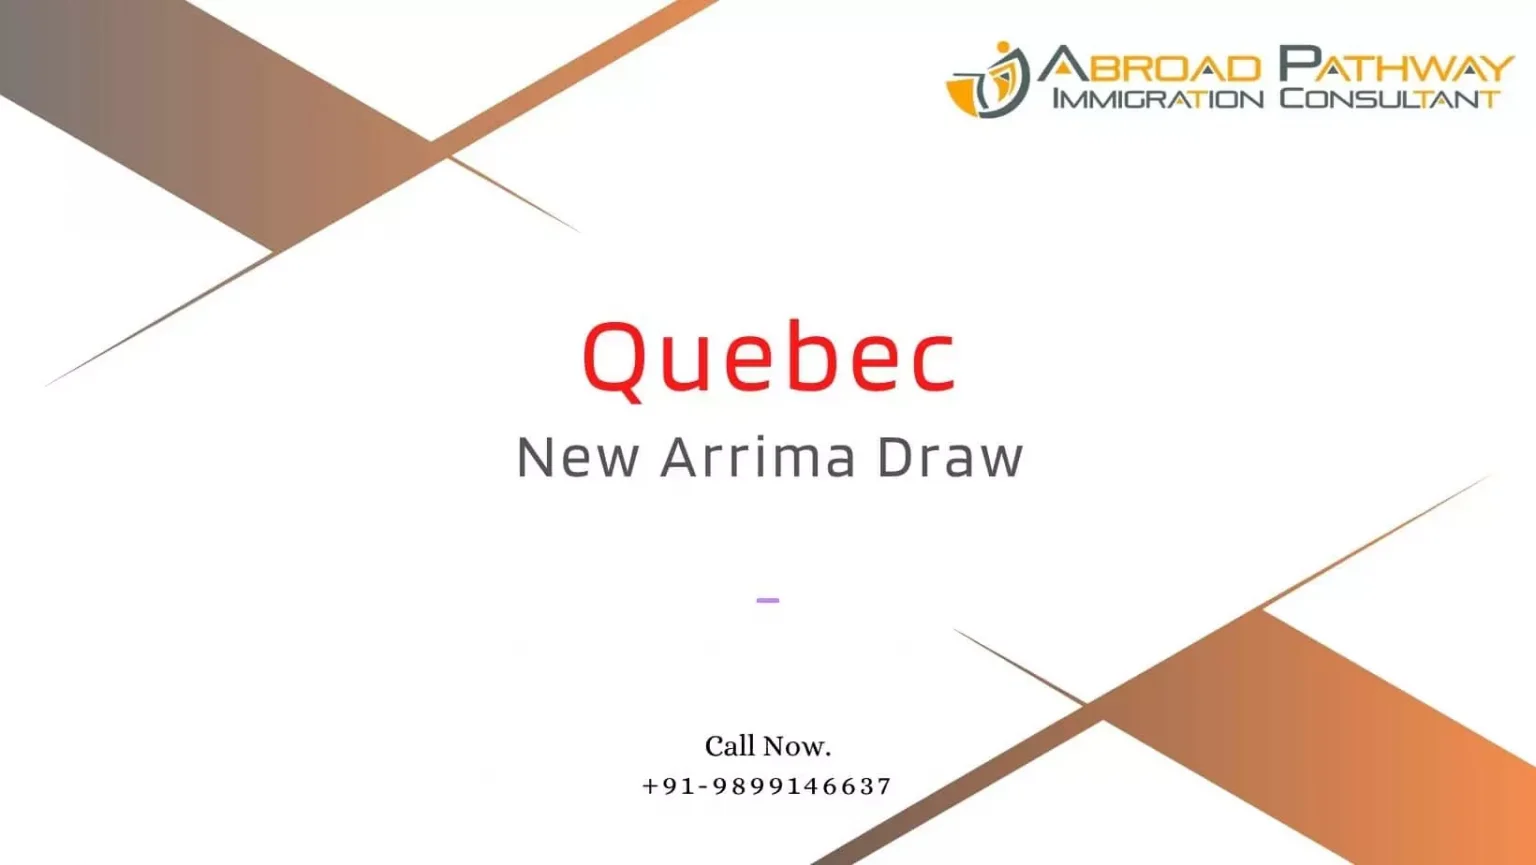 Quebec invites 322 in New Arrima draw